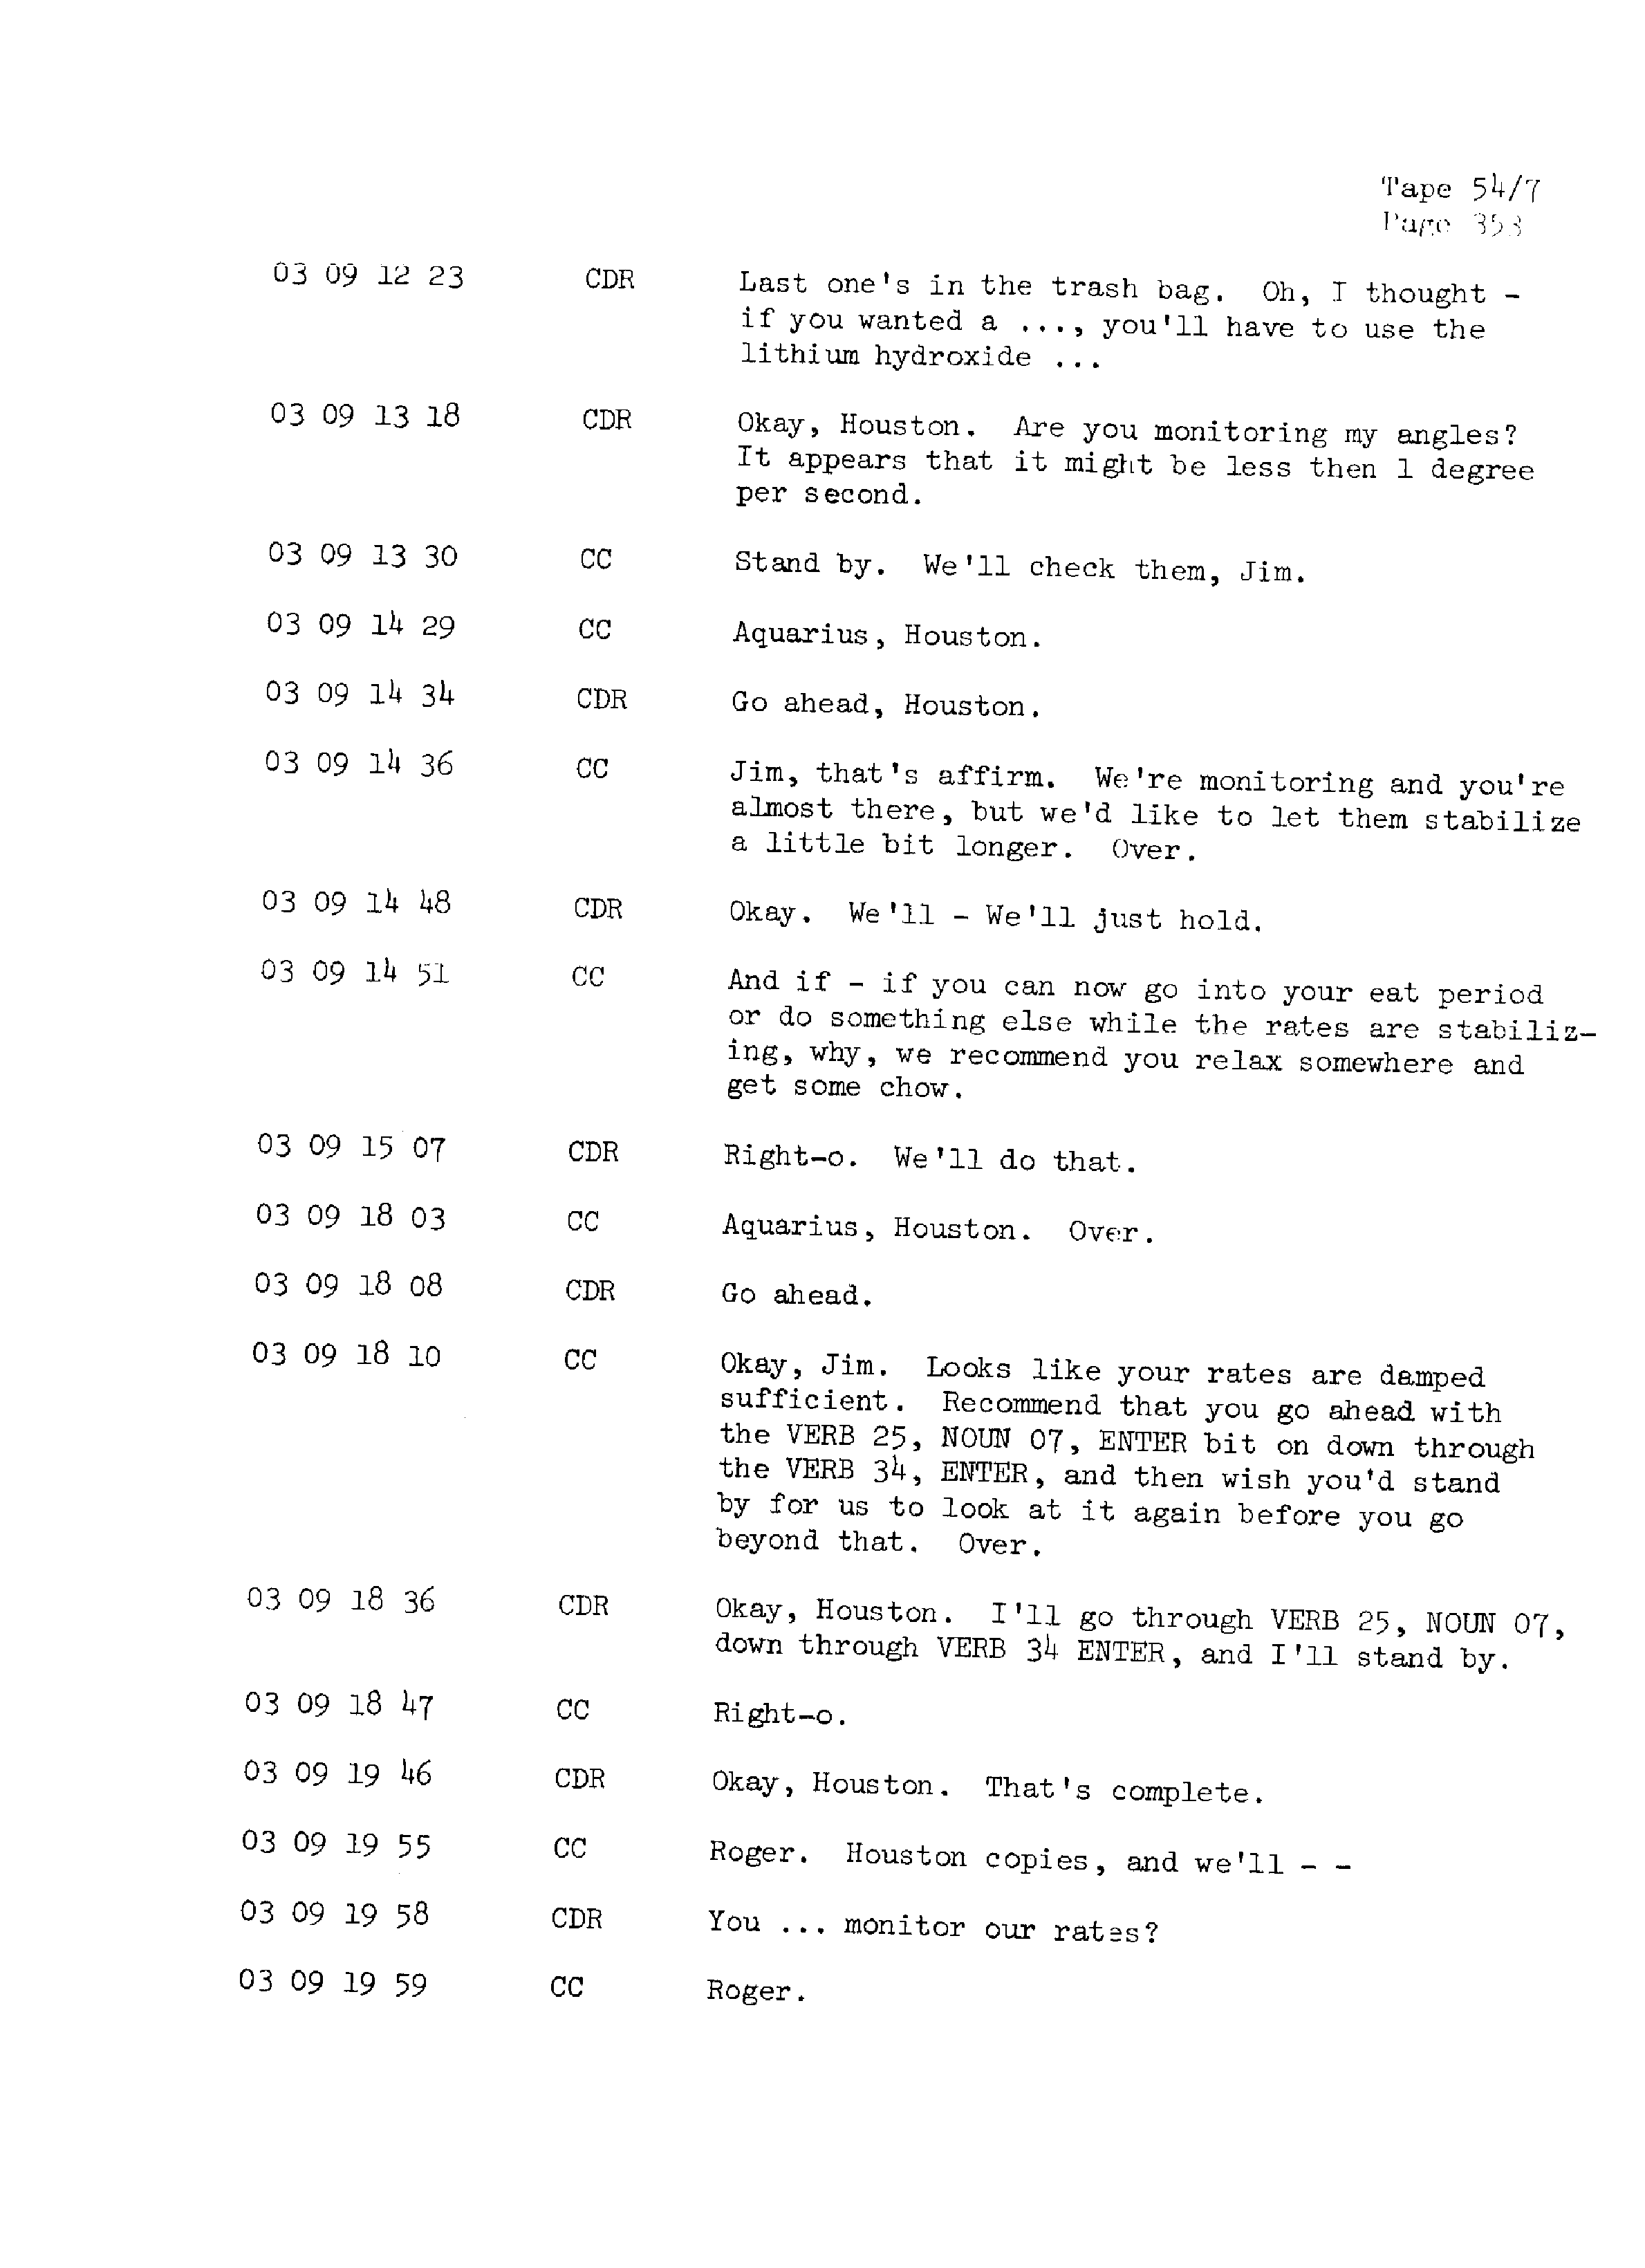 Page 360 of Apollo 13’s original transcript